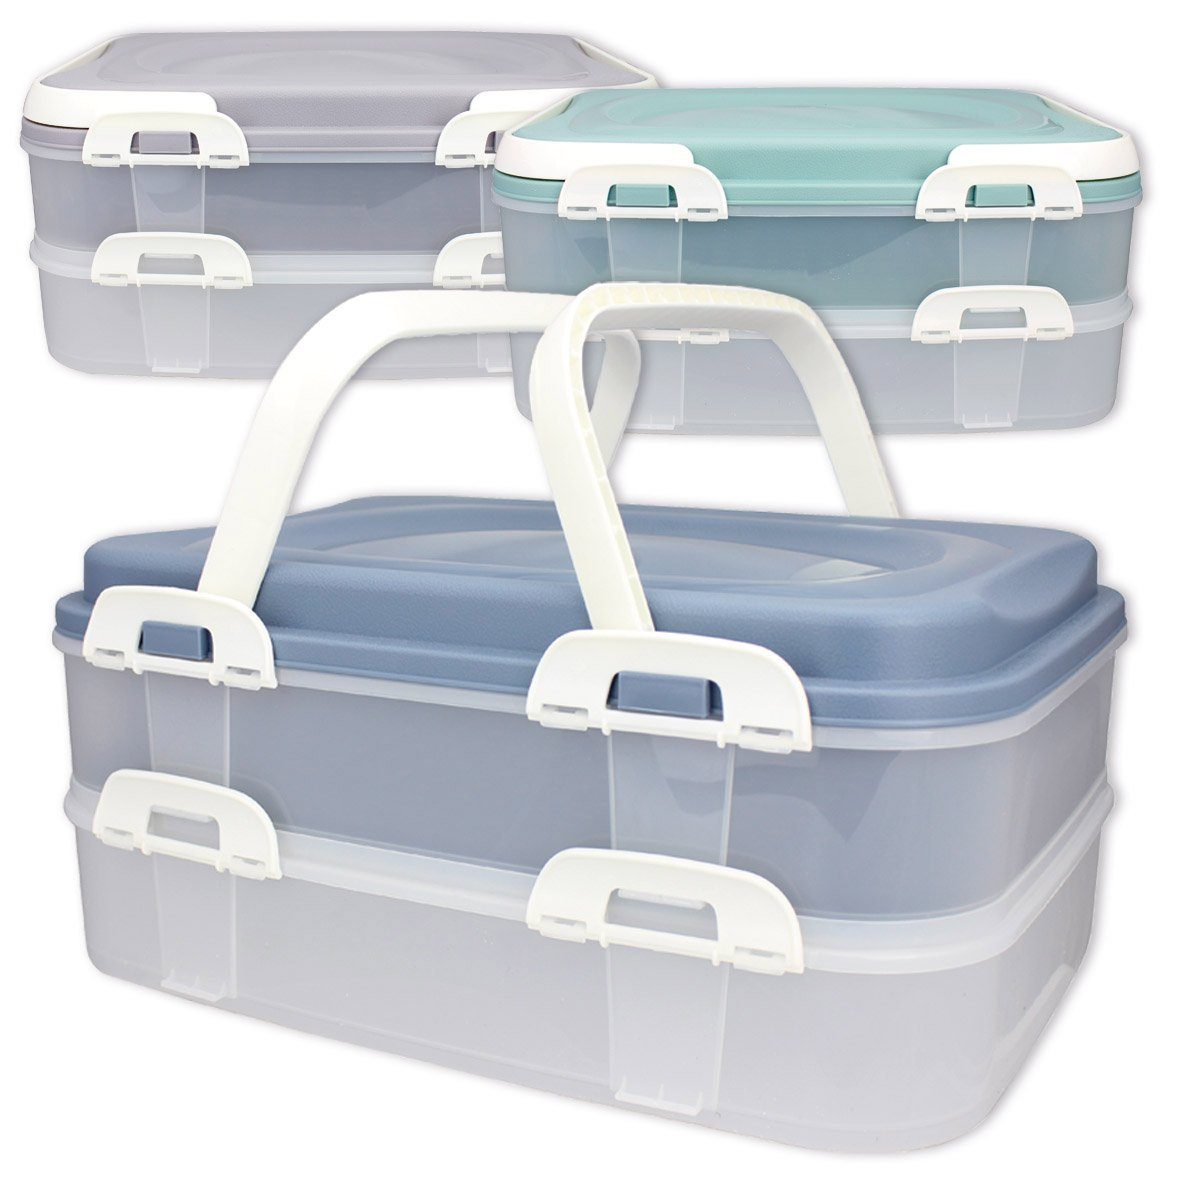 Centi Kuchentransportbox XL, (Farbe: mit Blau), Etagen Party Lebensmittel Kuchenbehälter Container Kunststoff, und 2 Transportbox lebensmittelecht klappbaren Griffen